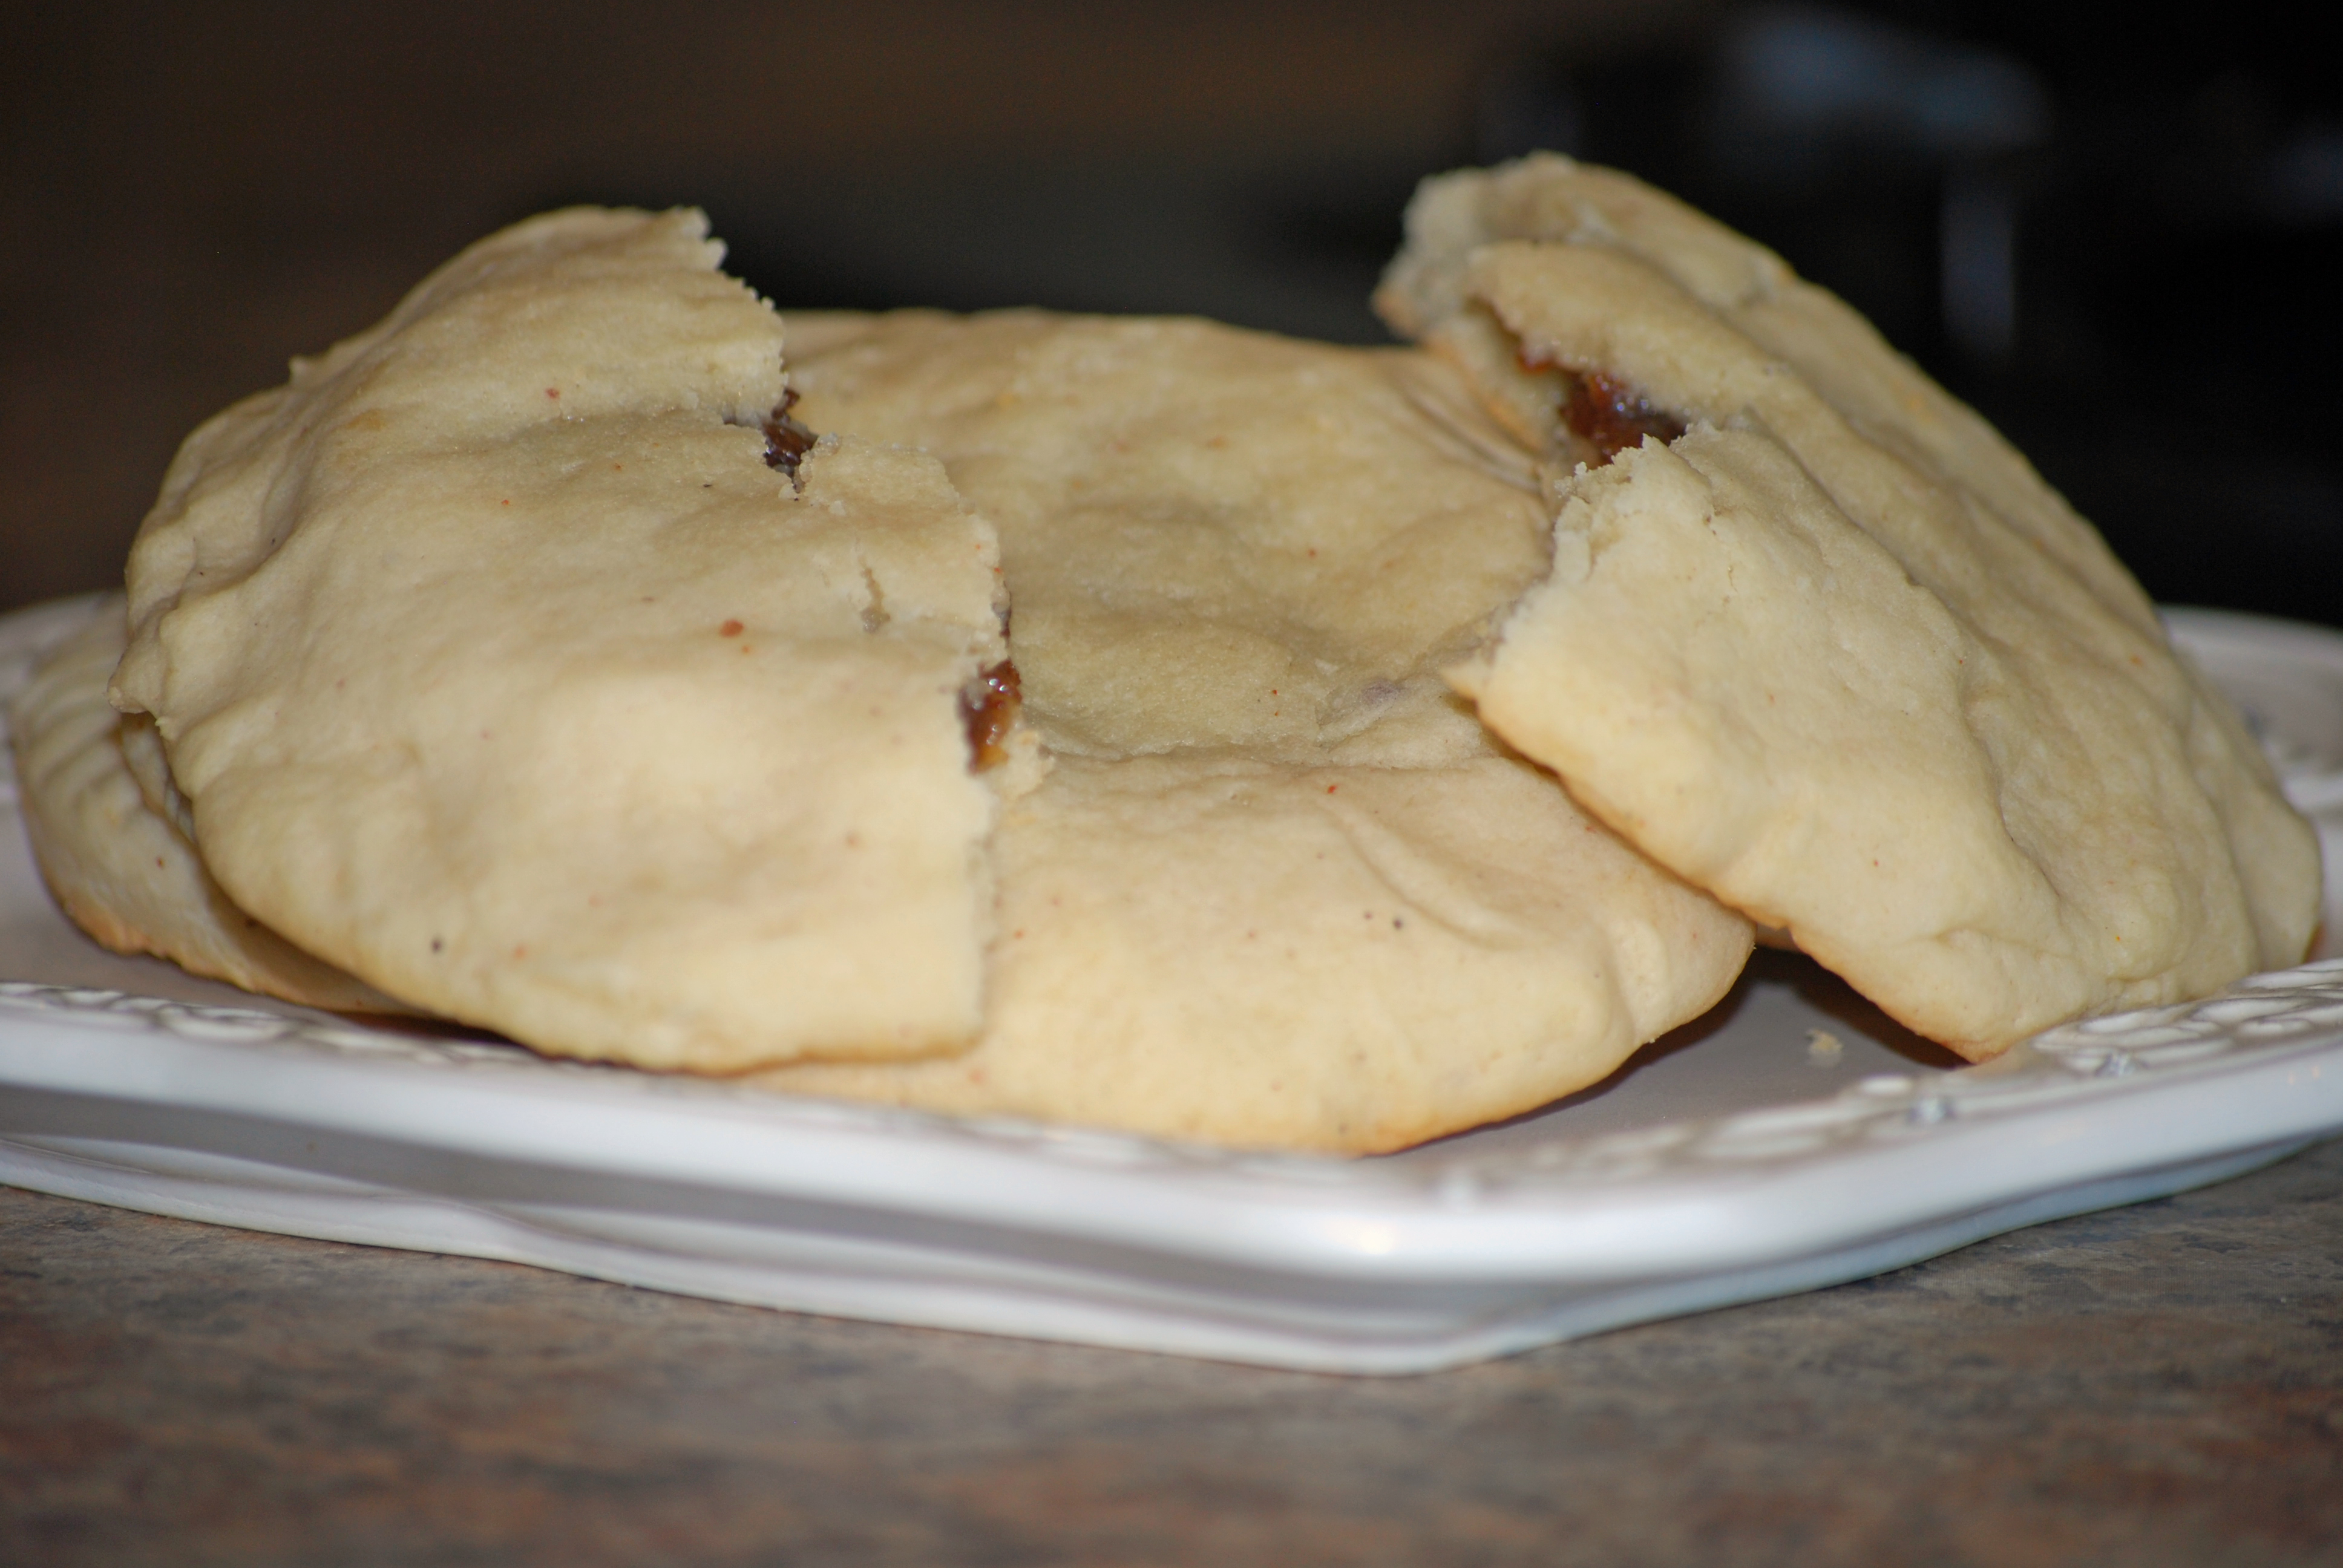 Raisin filled cookies recipe